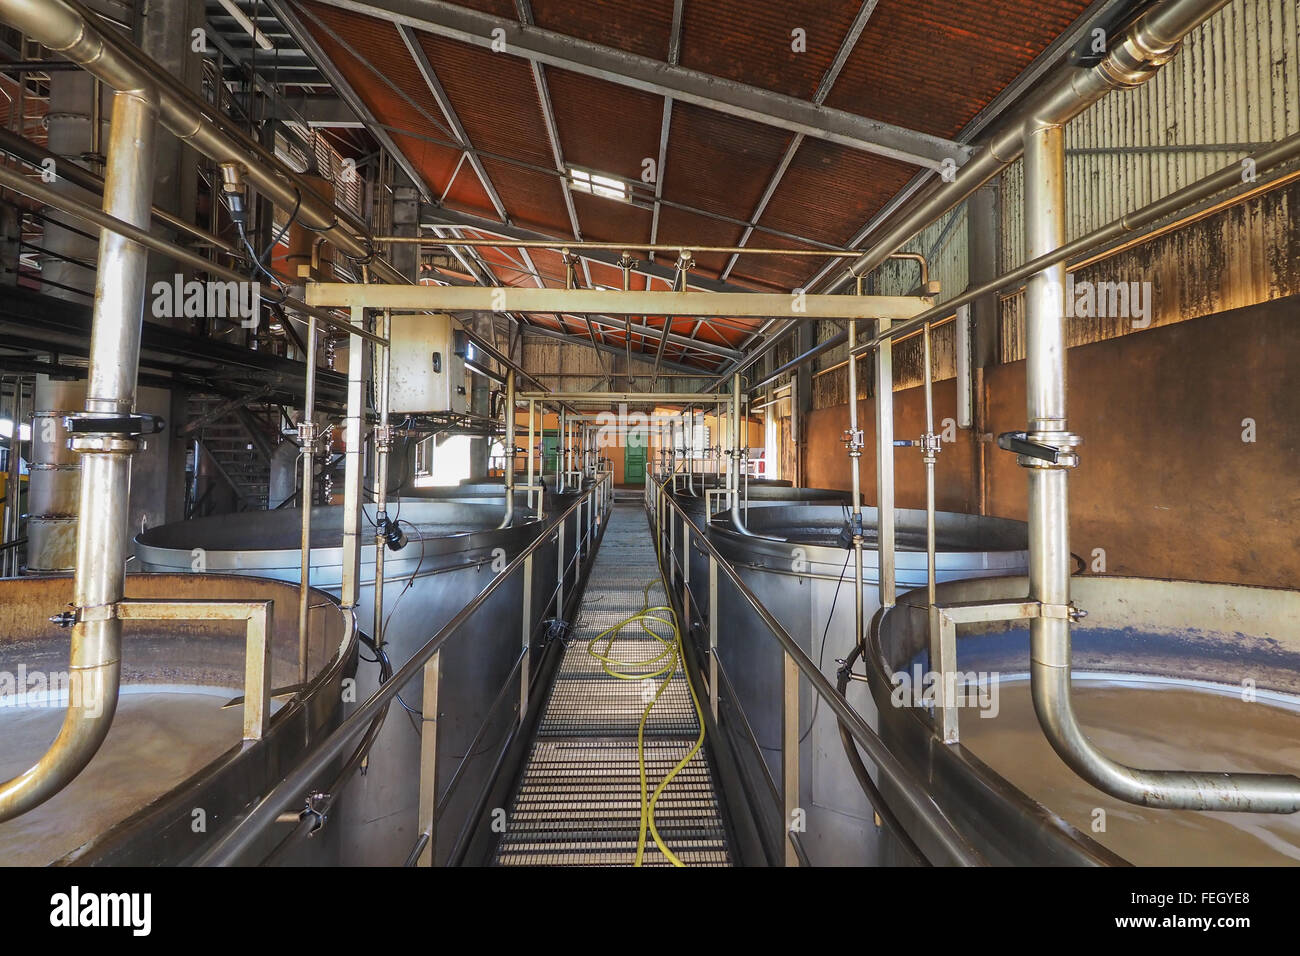 Vue intérieure d'une usine de rhum à Marie Galante, des Caraïbes, avec des réservoirs et tuyaux de brassage pour laisser le jus de sucre. fermentarion Banque D'Images